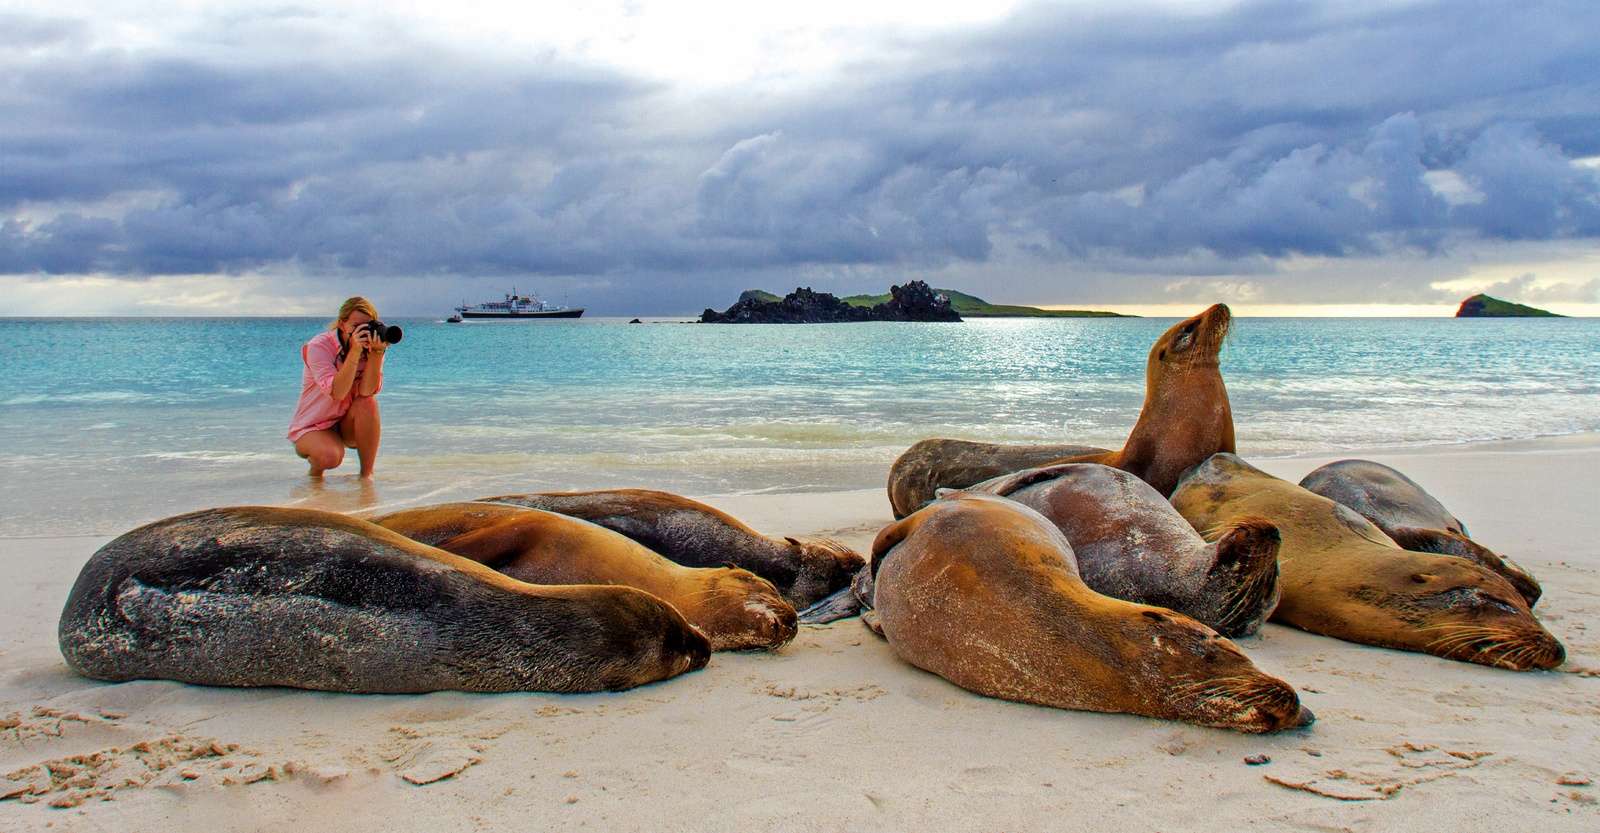 Nat Hab guest and Galapagos sea lions, Isabela Island, Galapagos, Ecuador.